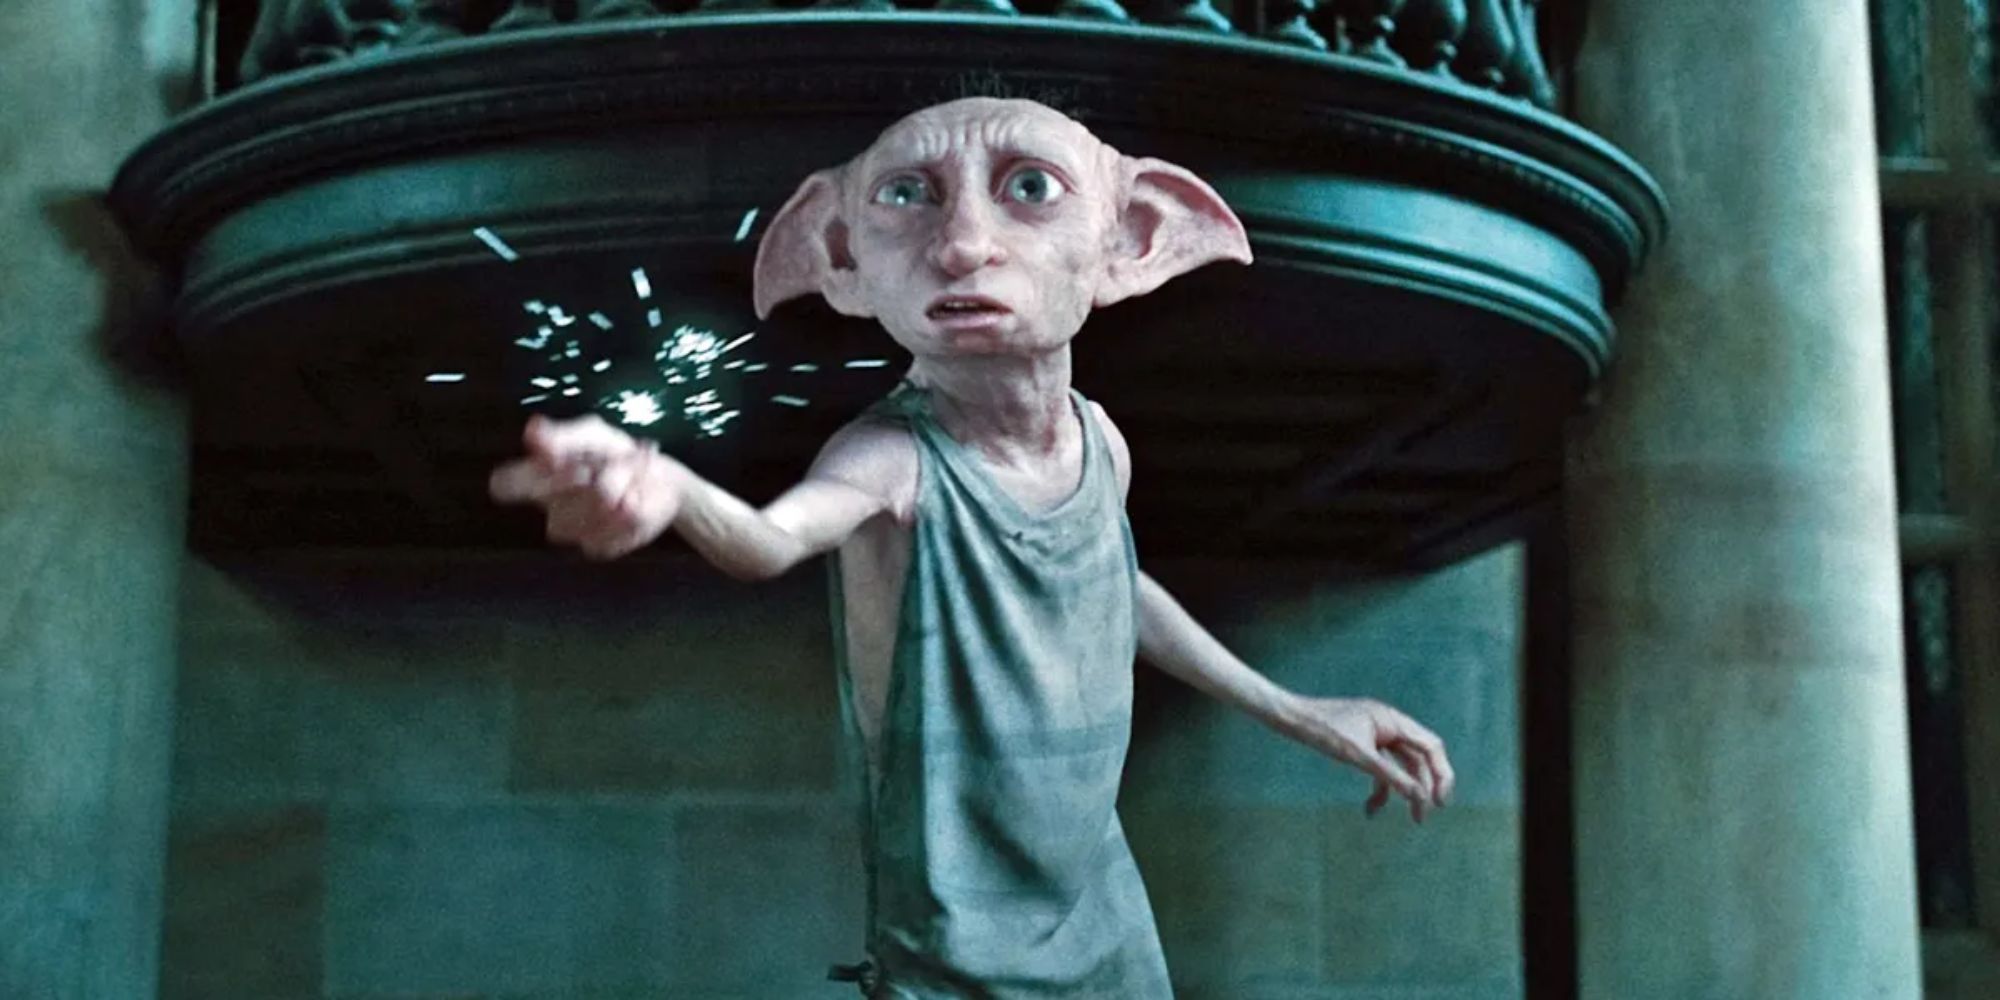 La magie est émise par les doigts de Dobby lorsqu'il claque 